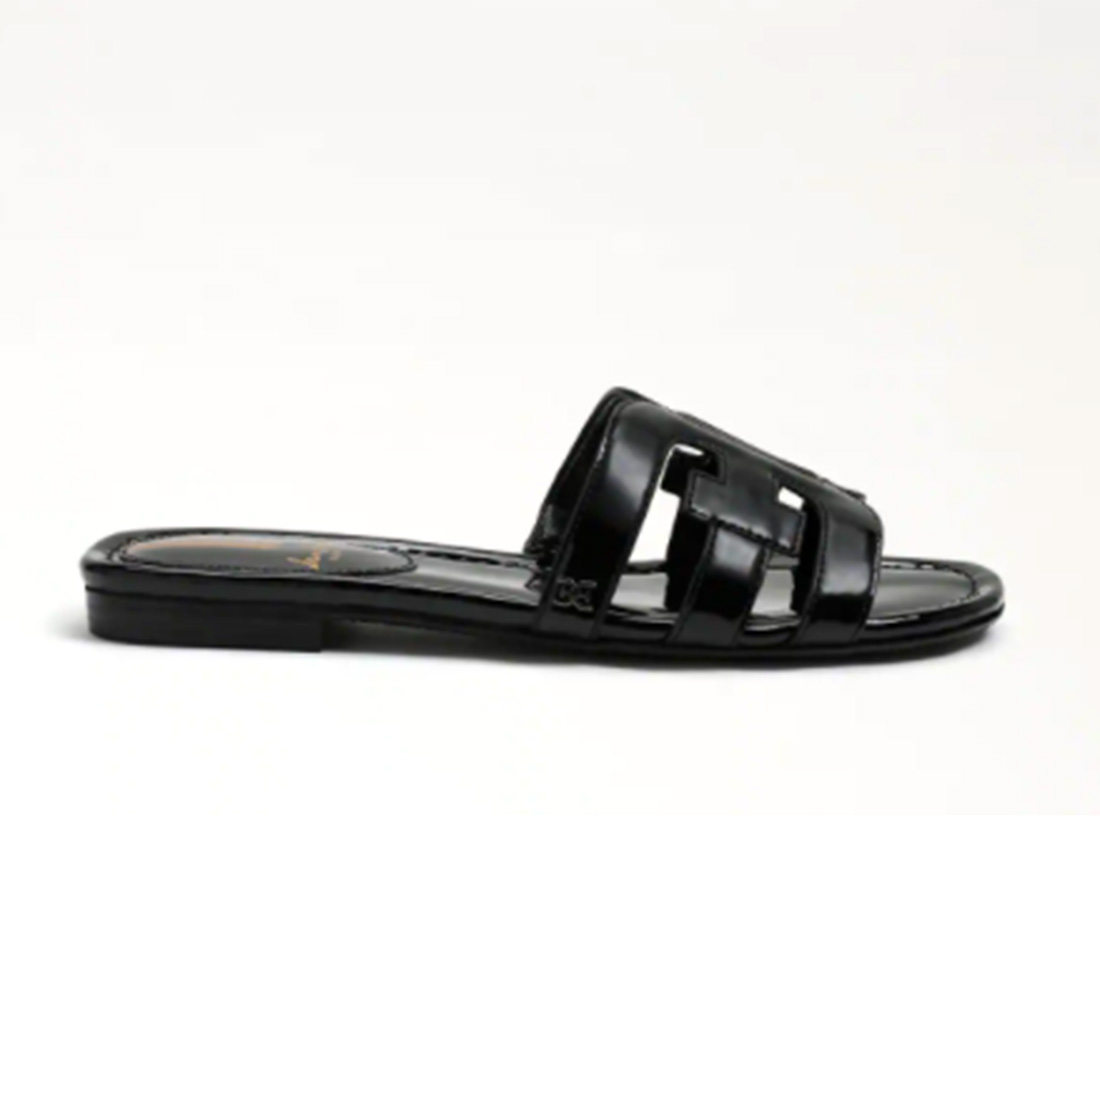 sam edelman bay sandal in black patent 106761